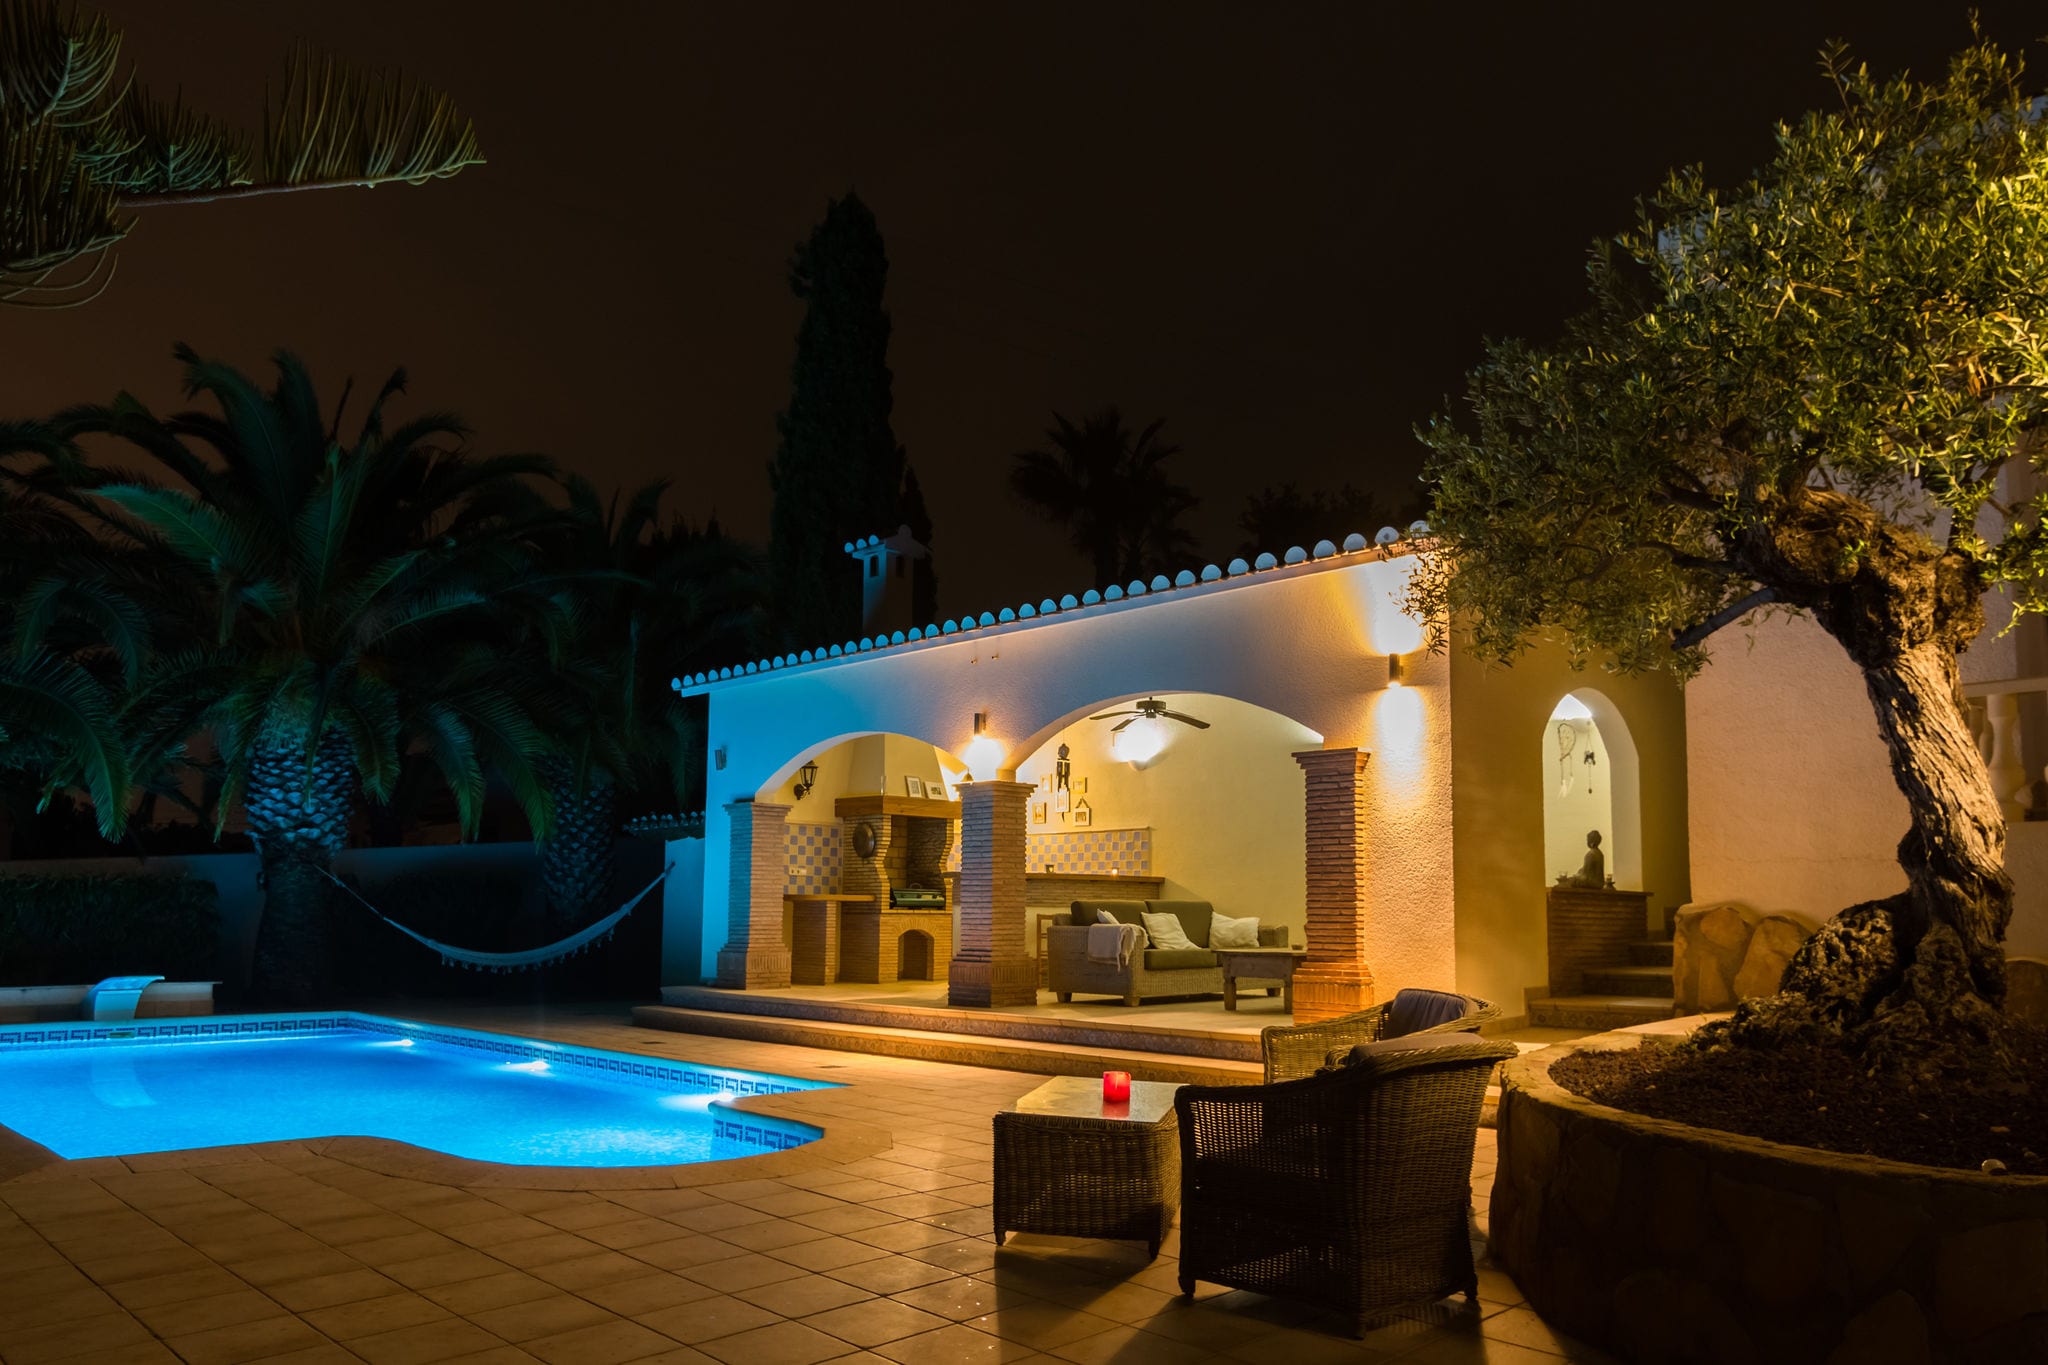 Vrijstaande villa met privézwembad en veranda met lounge-area en buitenkeuken